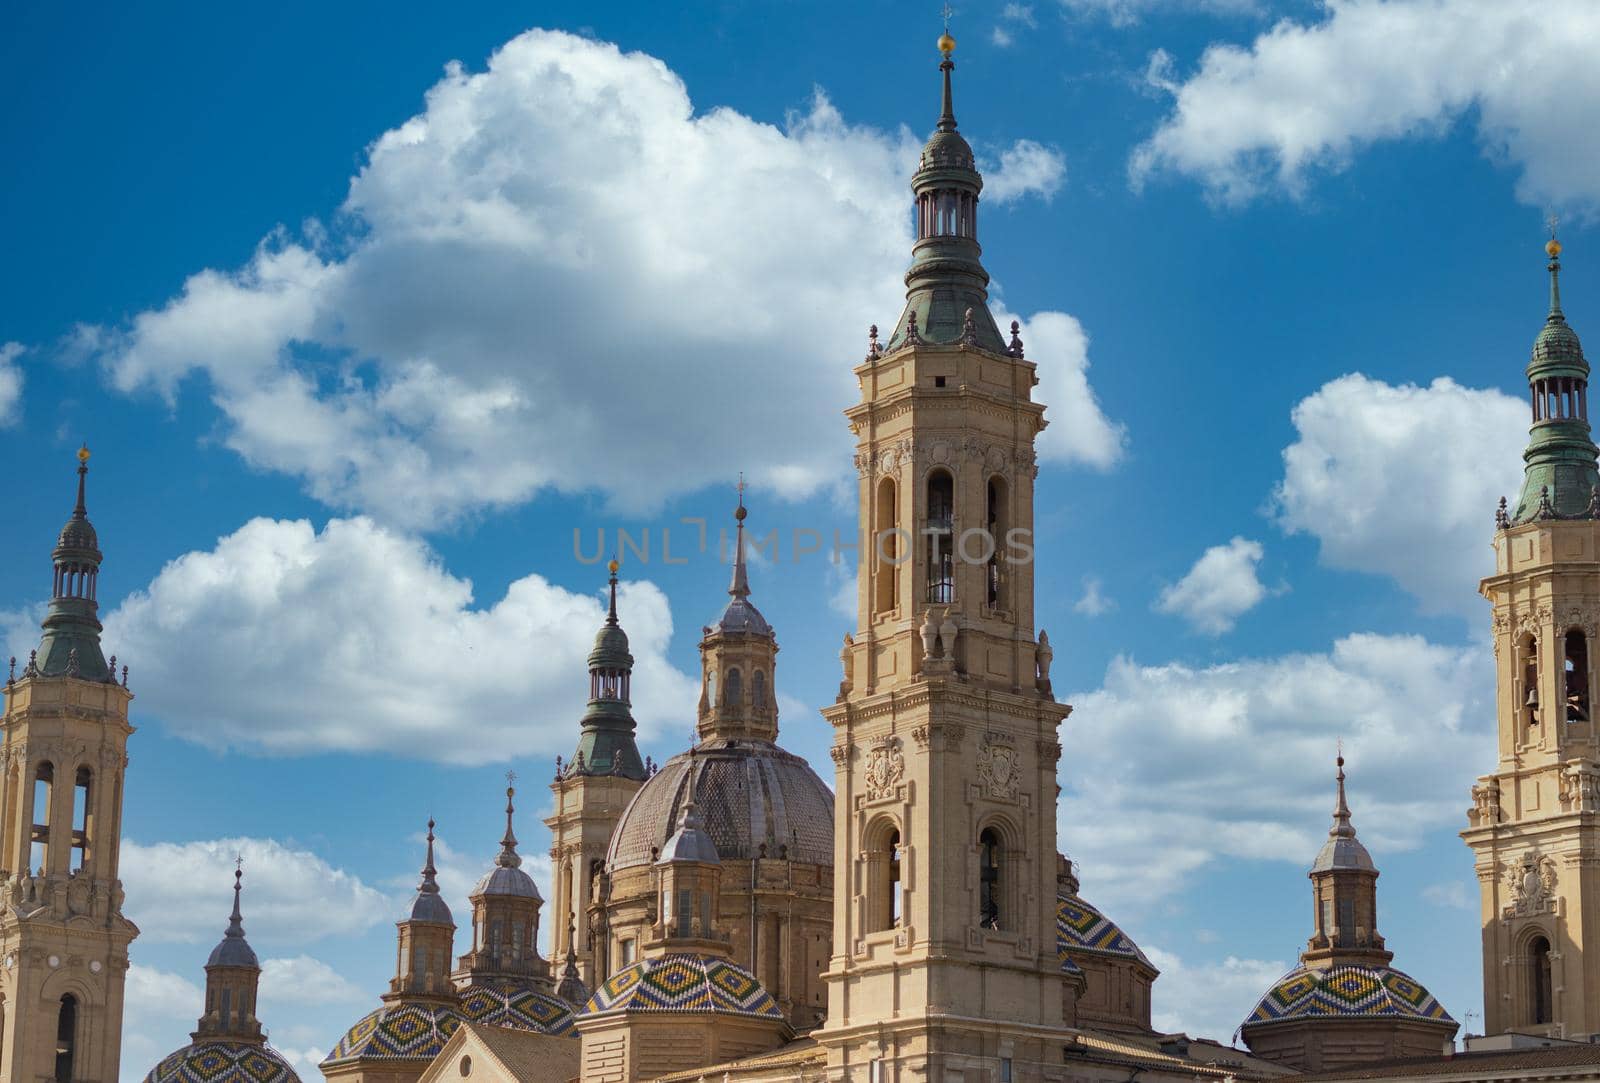 basilica de nuestra señora del pilar zaragoza , spain april 2021 cloudy skies